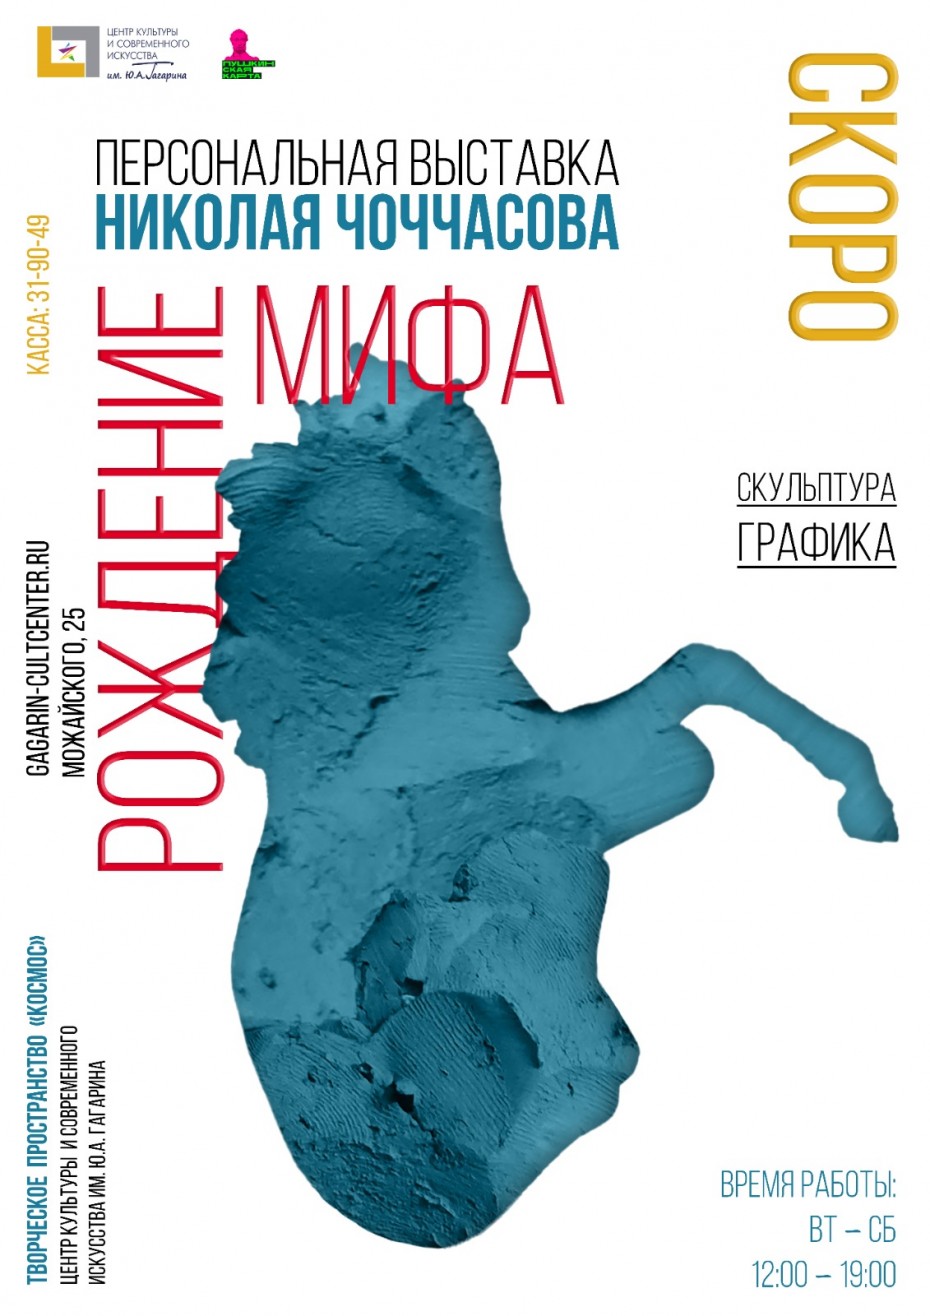 В Якутске откроется персональная выставка скульптора Николая Чоччасова